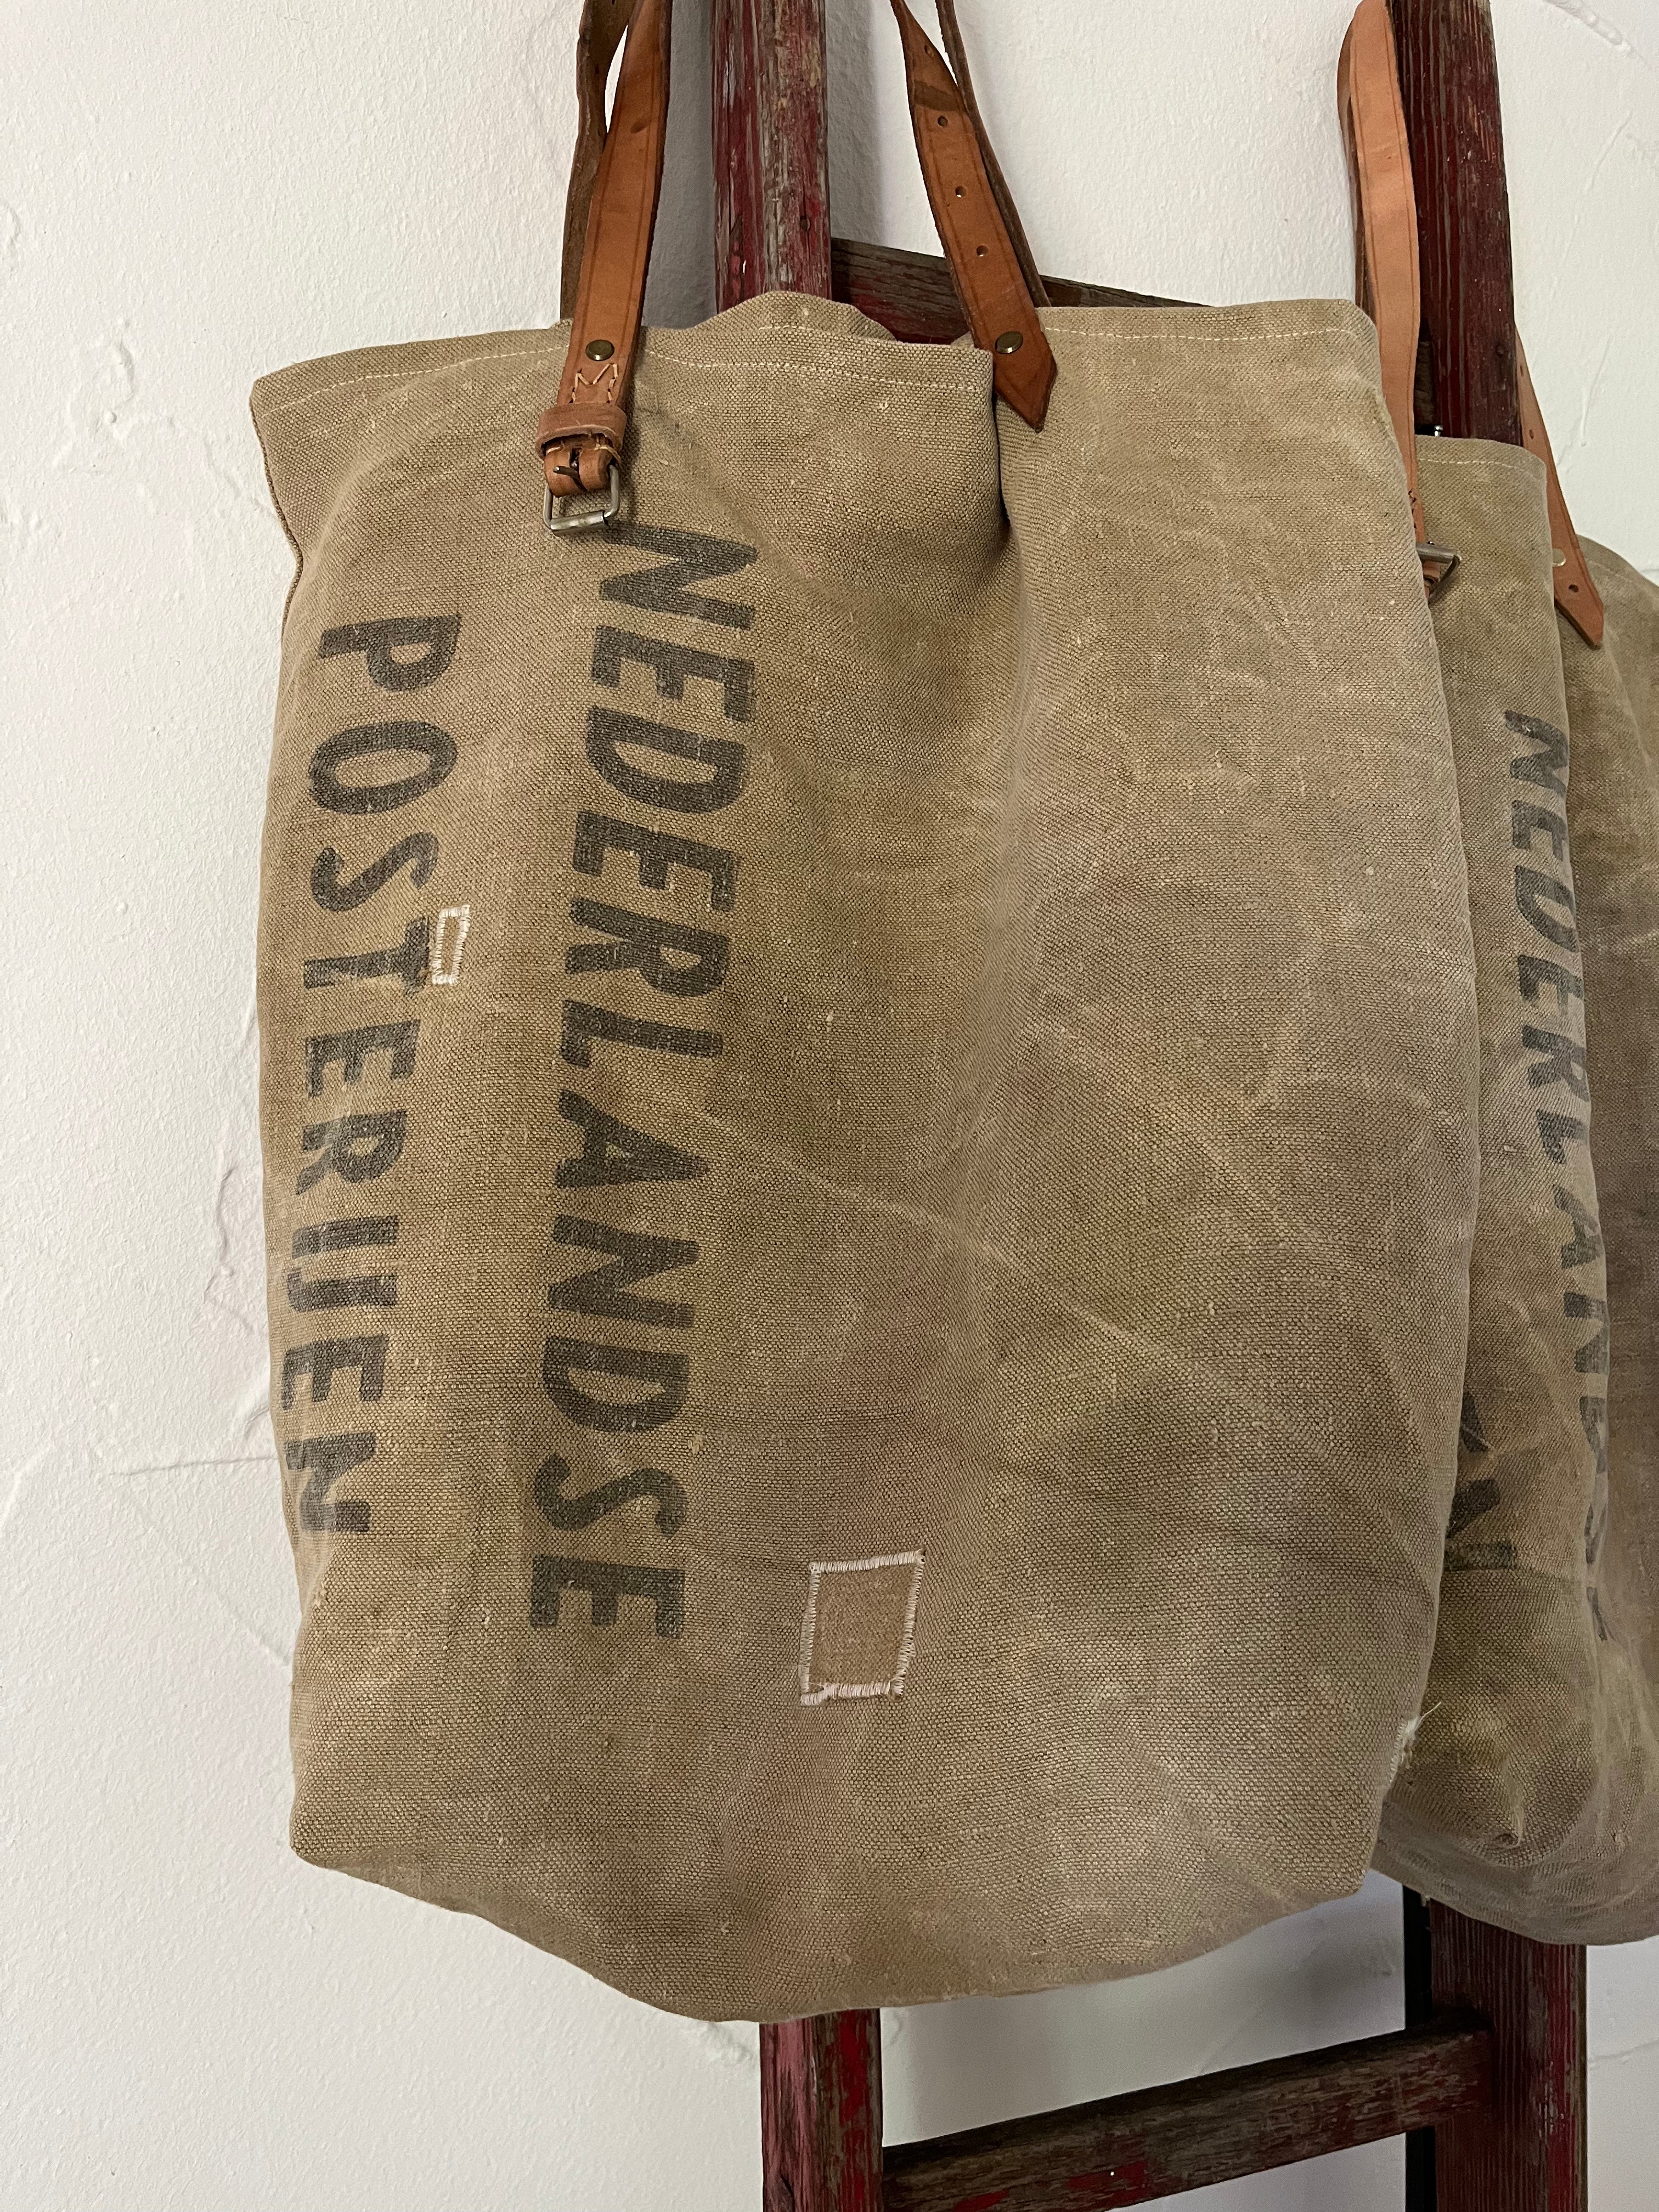 Dutch Postbag: Shopper aus einem alten niederländischen Postsack mit Aufschrift